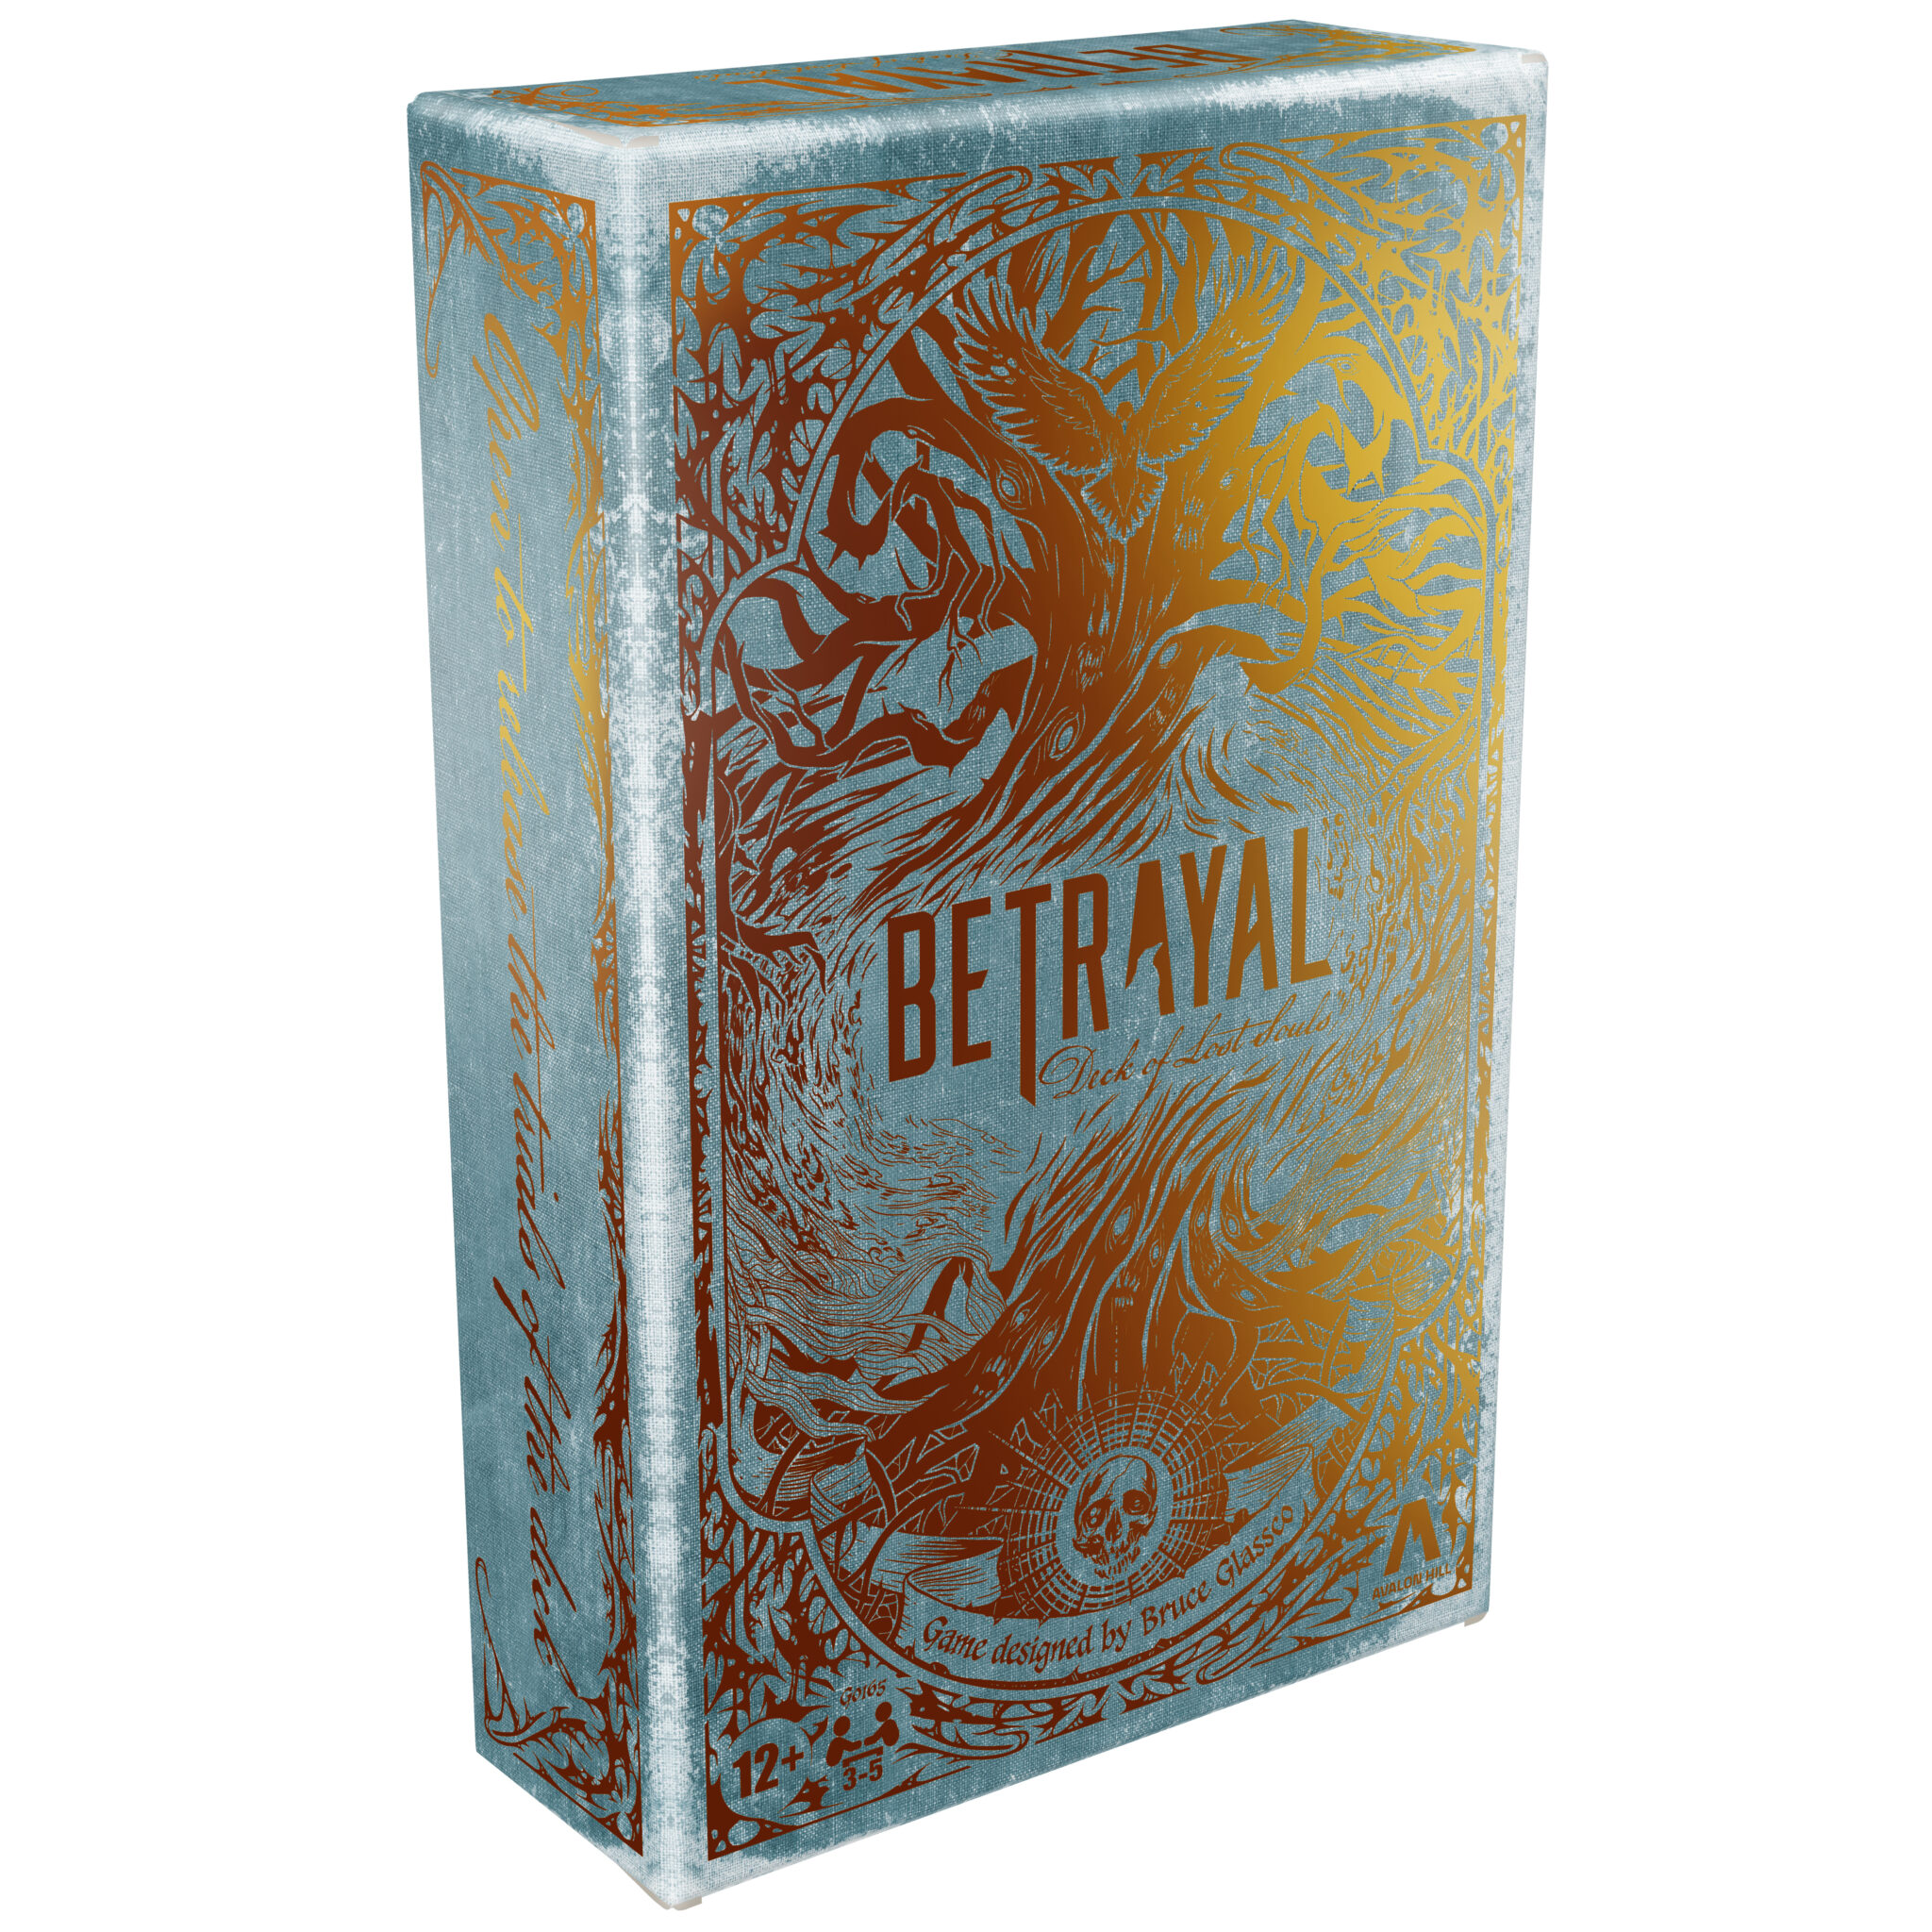 Betrayal Deck of Lost Souls  box